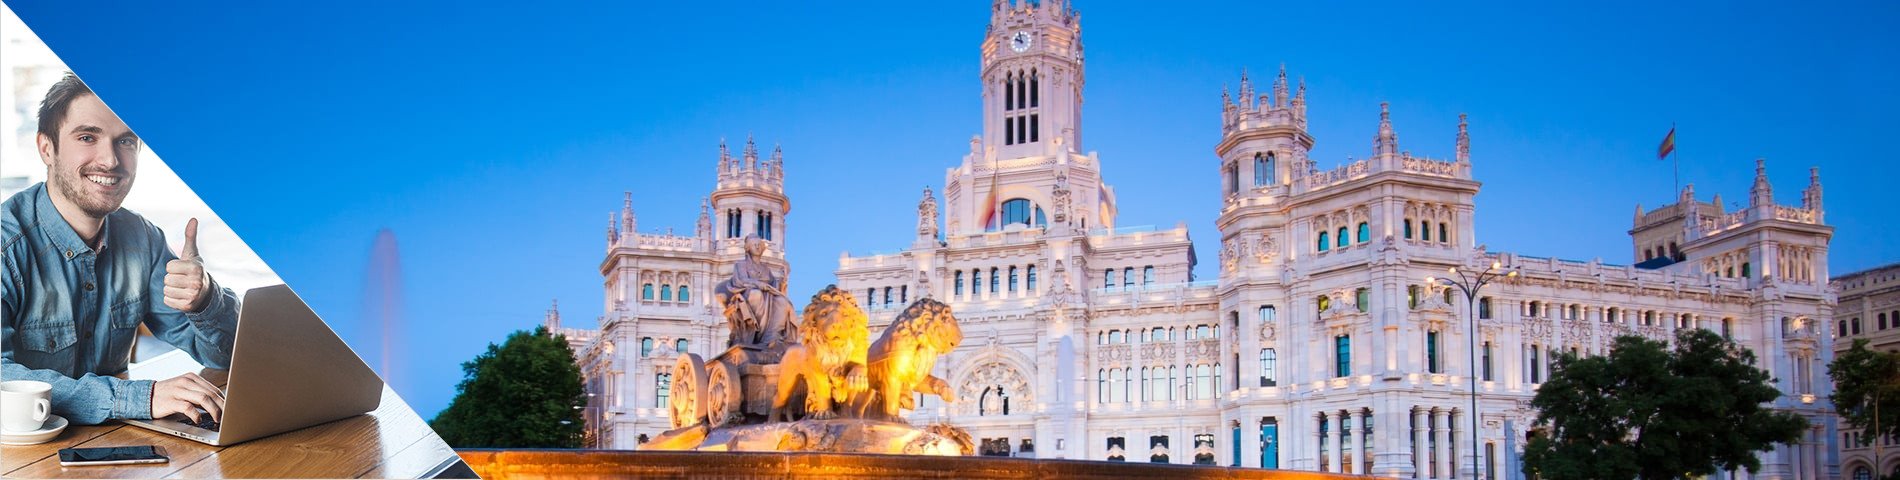 Madrid - Spanyol szakmai gyakorlat és nyelvtanulás